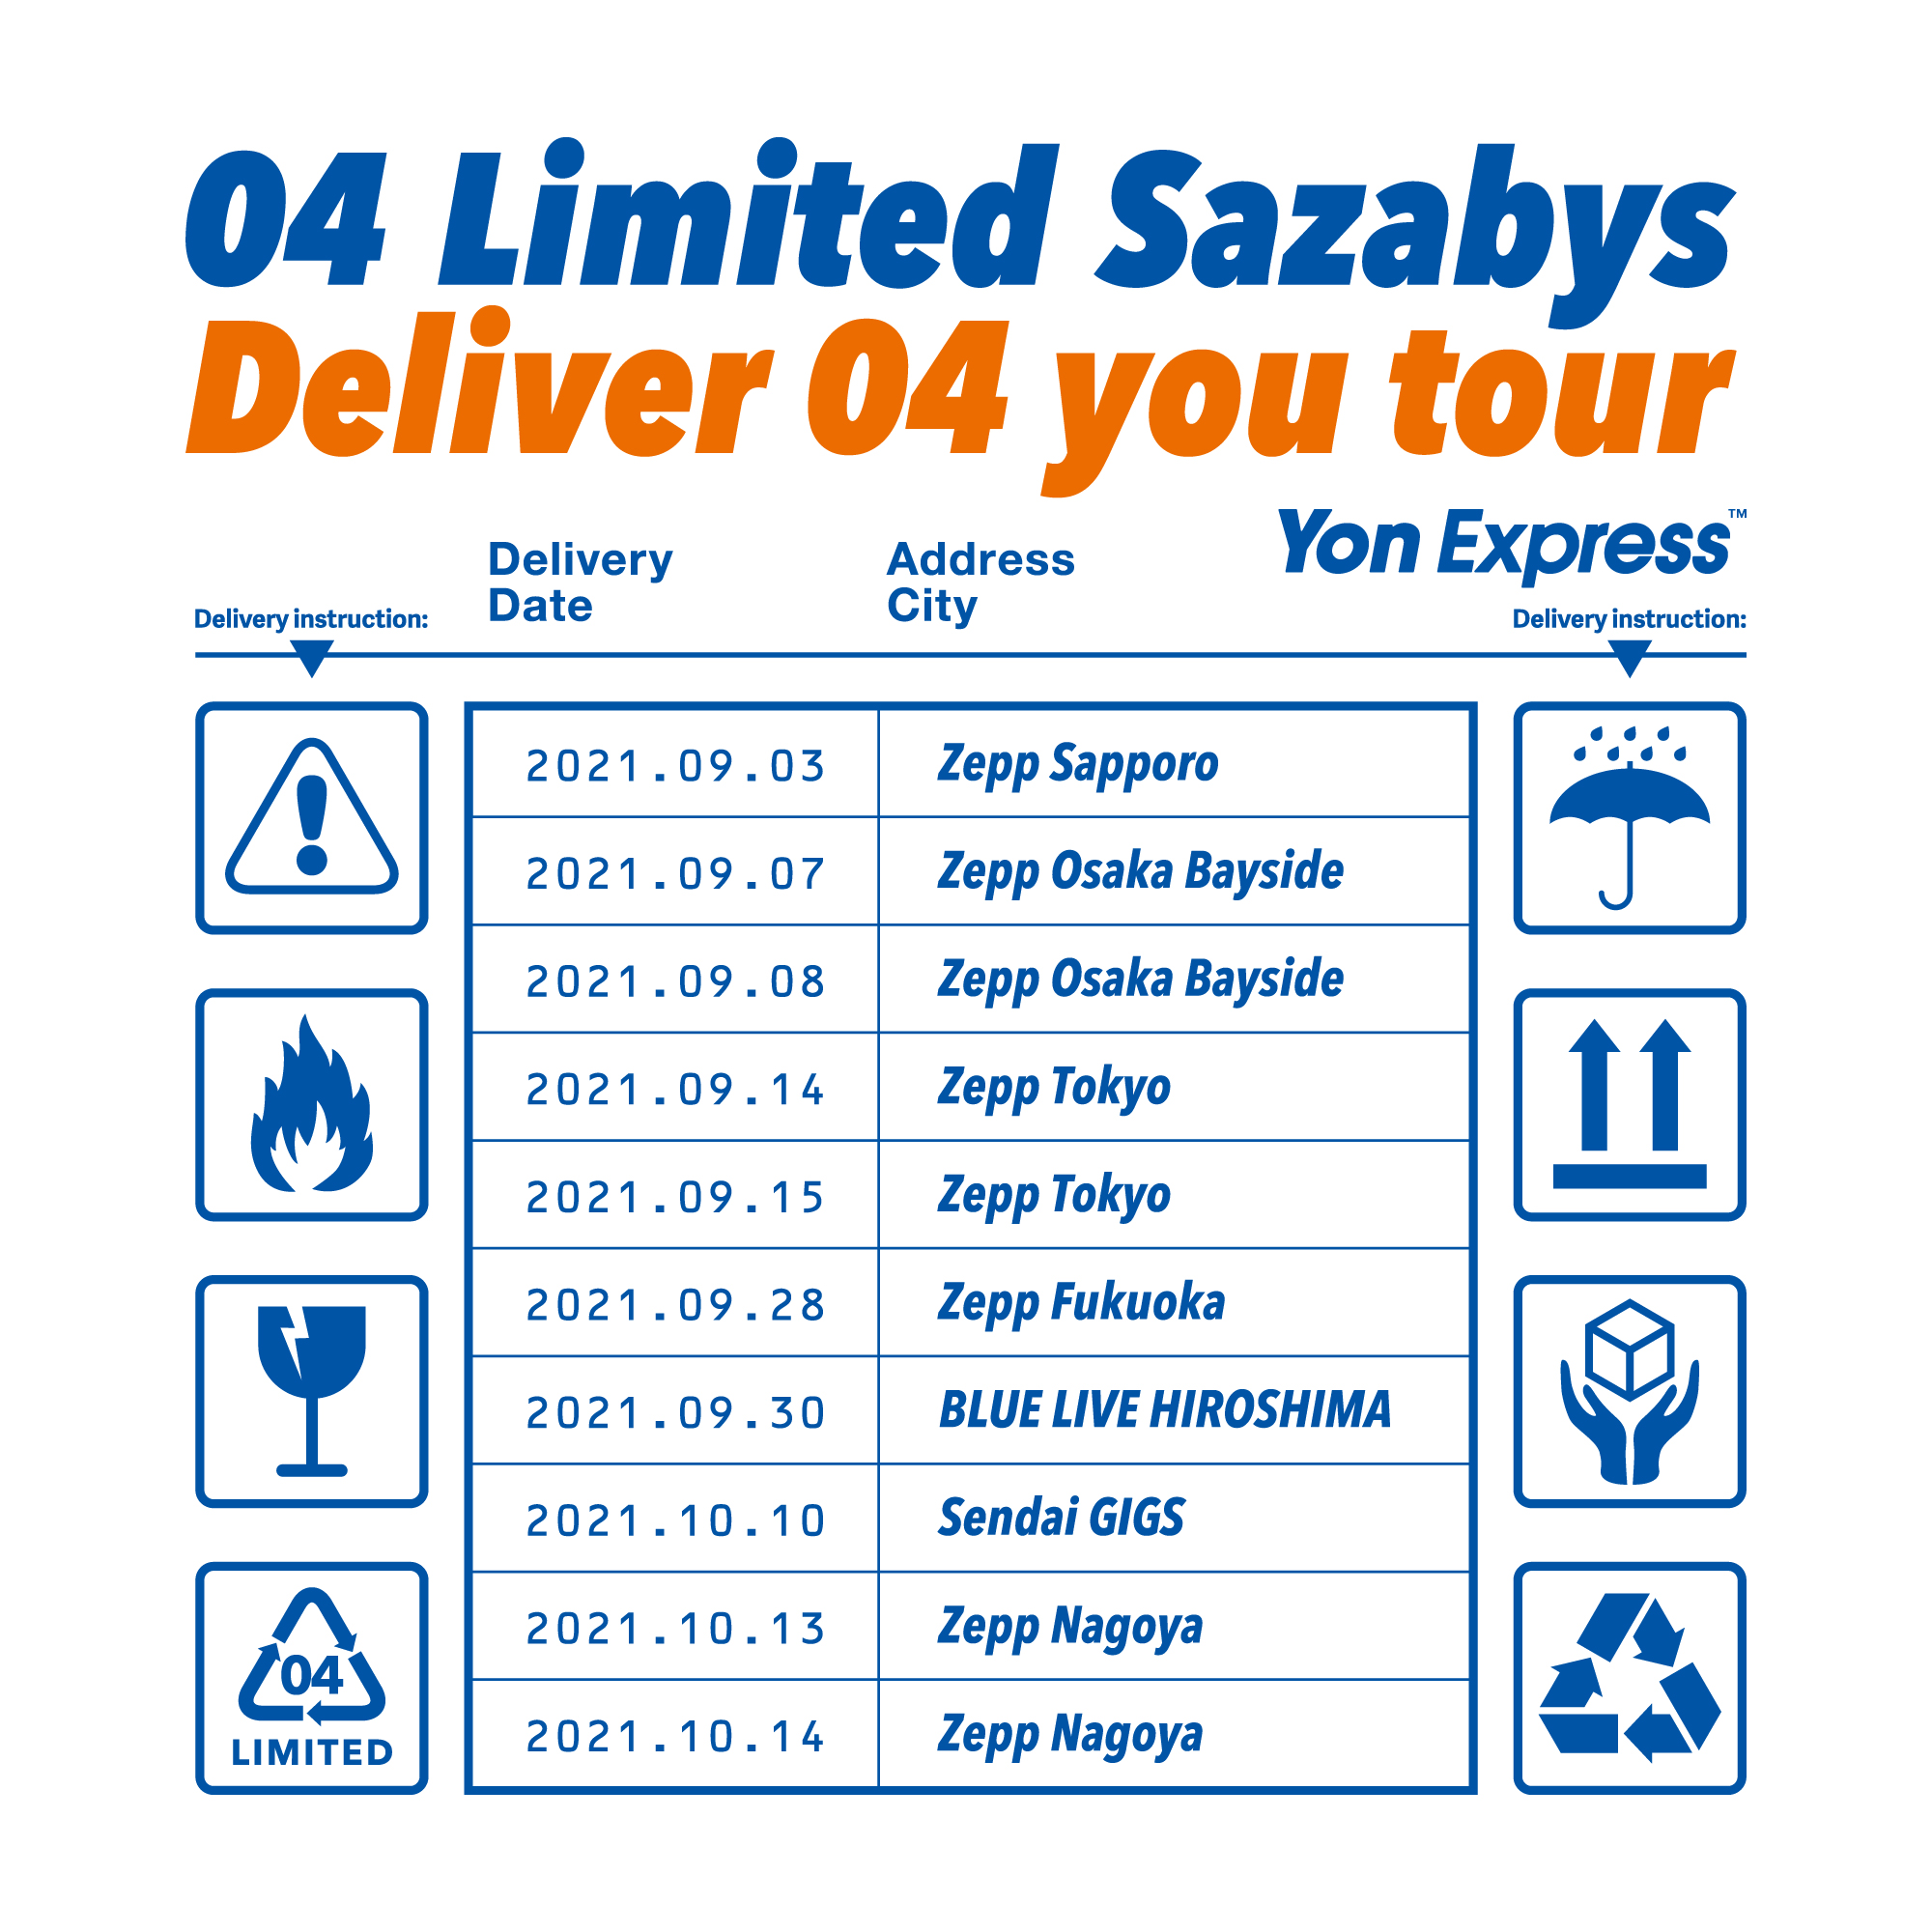 【北海道】Deliver 04 you tour (Zepp Sapporo)